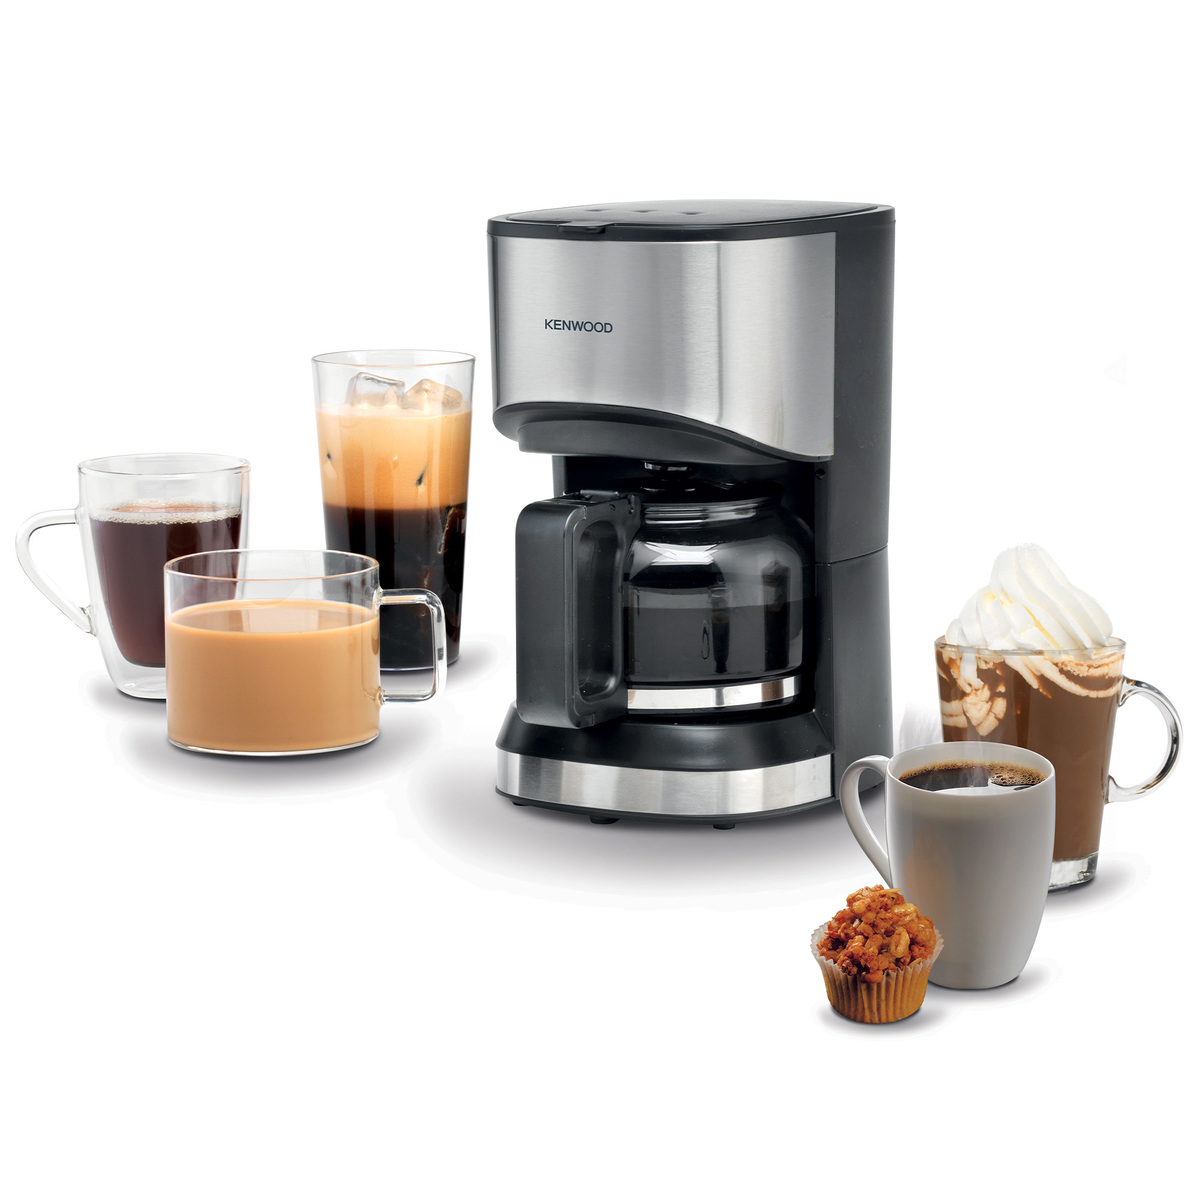 كينوود صانعة قهوة 6 أكواب ، 550 واط ، أسود / فضي ، CMM05.000BM